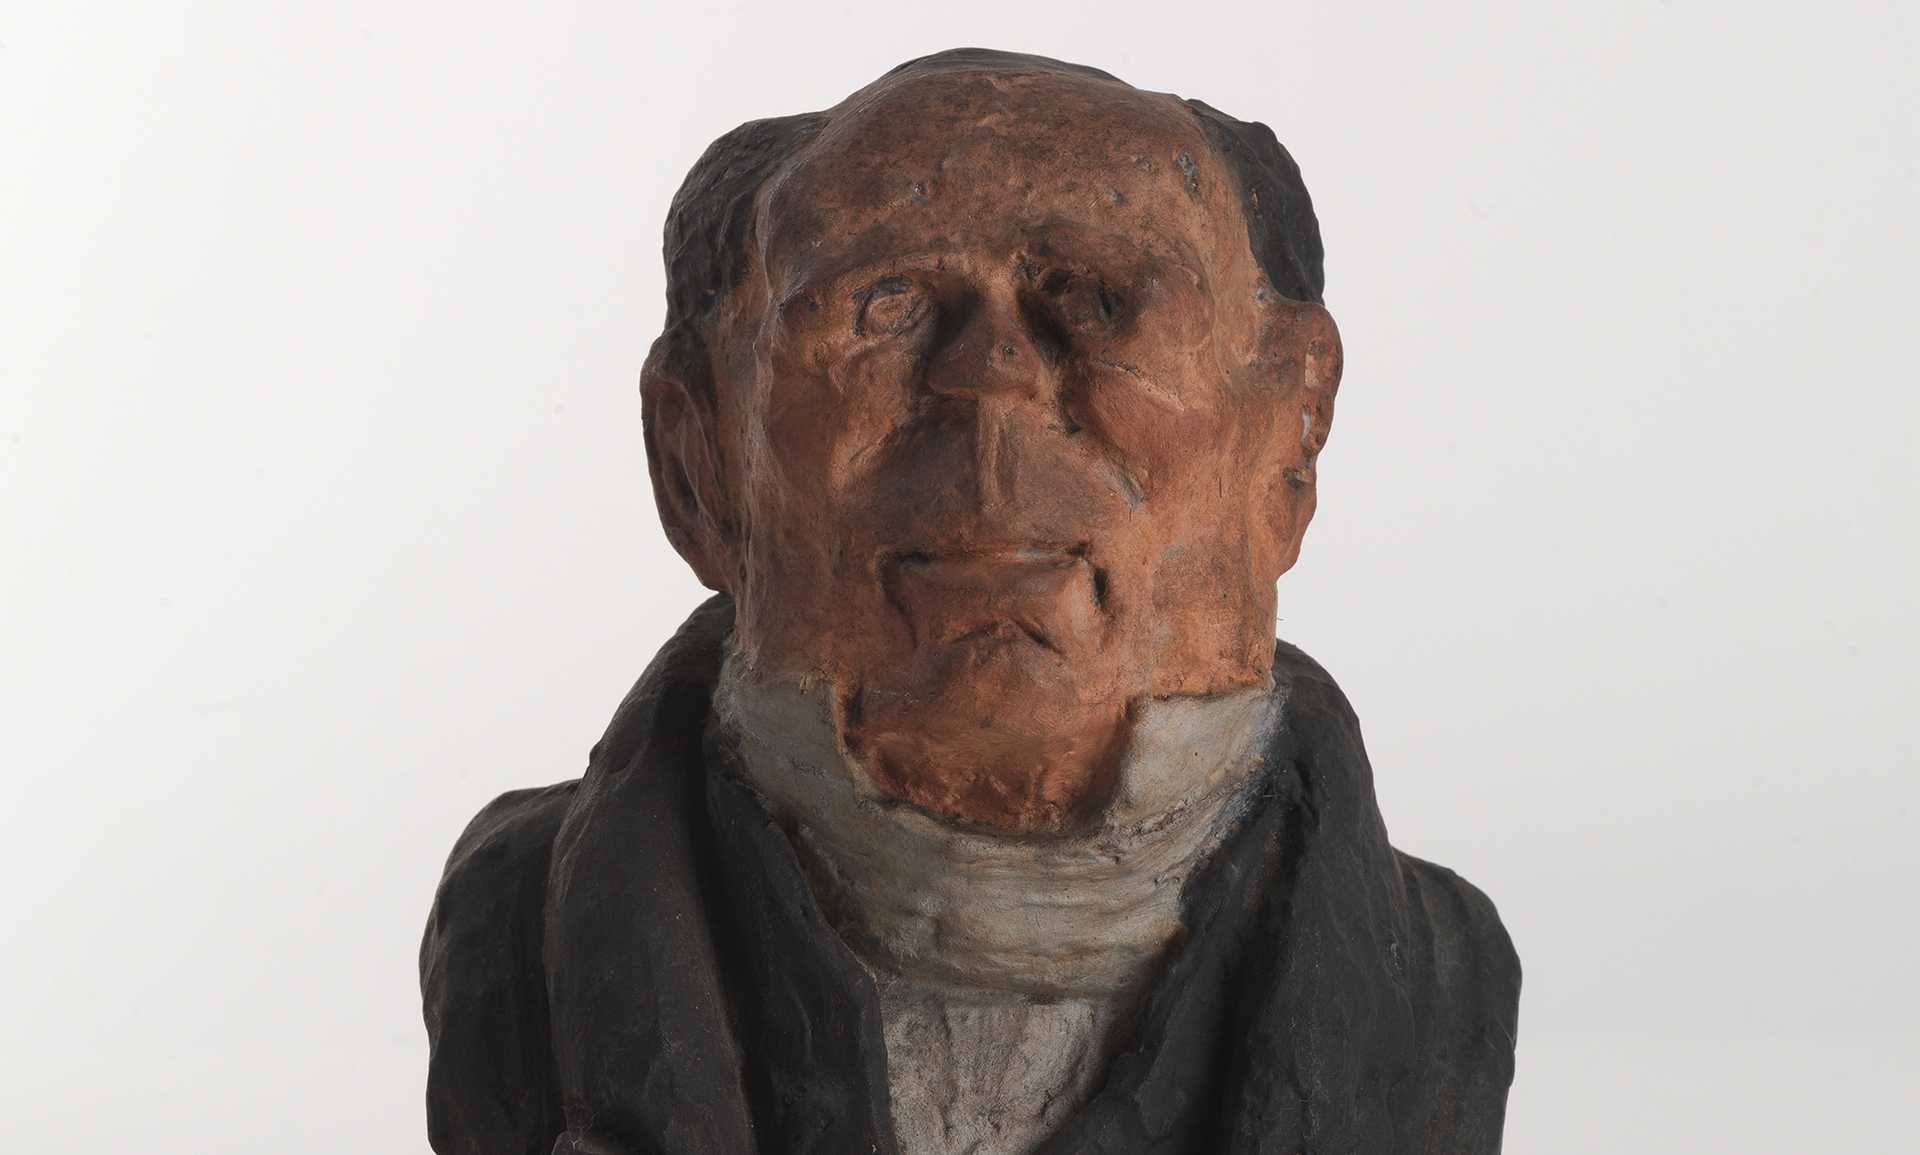 Z sehen ist eine Büste eines Mannes mit Glatze. Die Skulptur stammt von dem französischen Künstler und Bildhauer Honore Daumier.